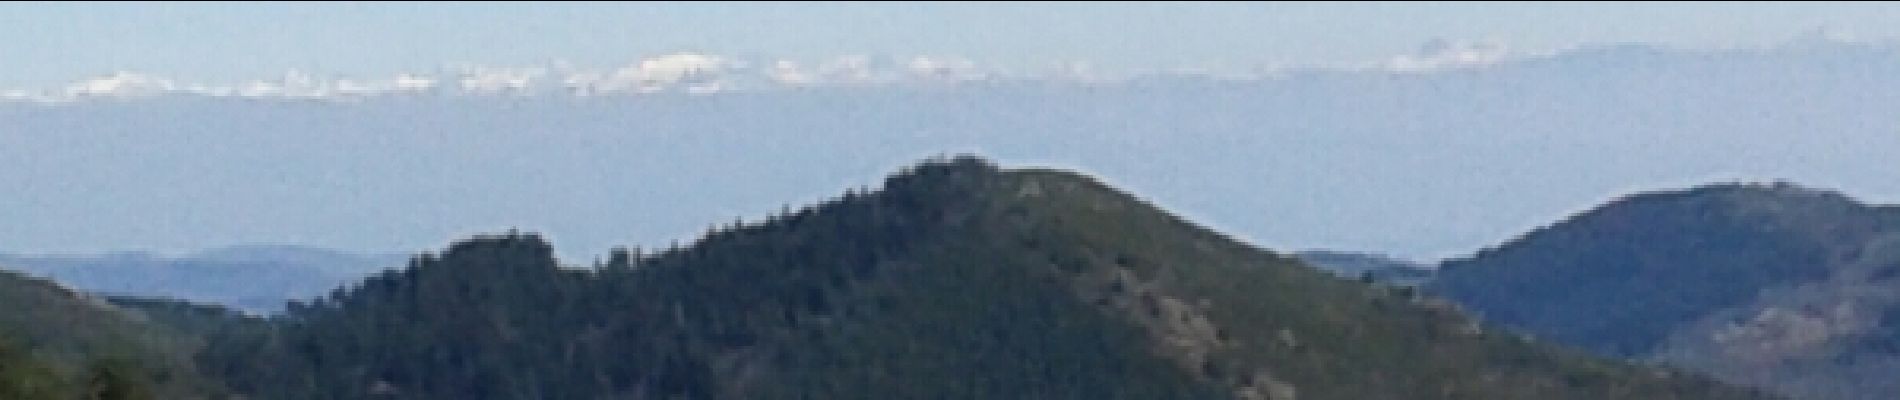 POI Mézilhac - vue sur Mont Blanc - Photo